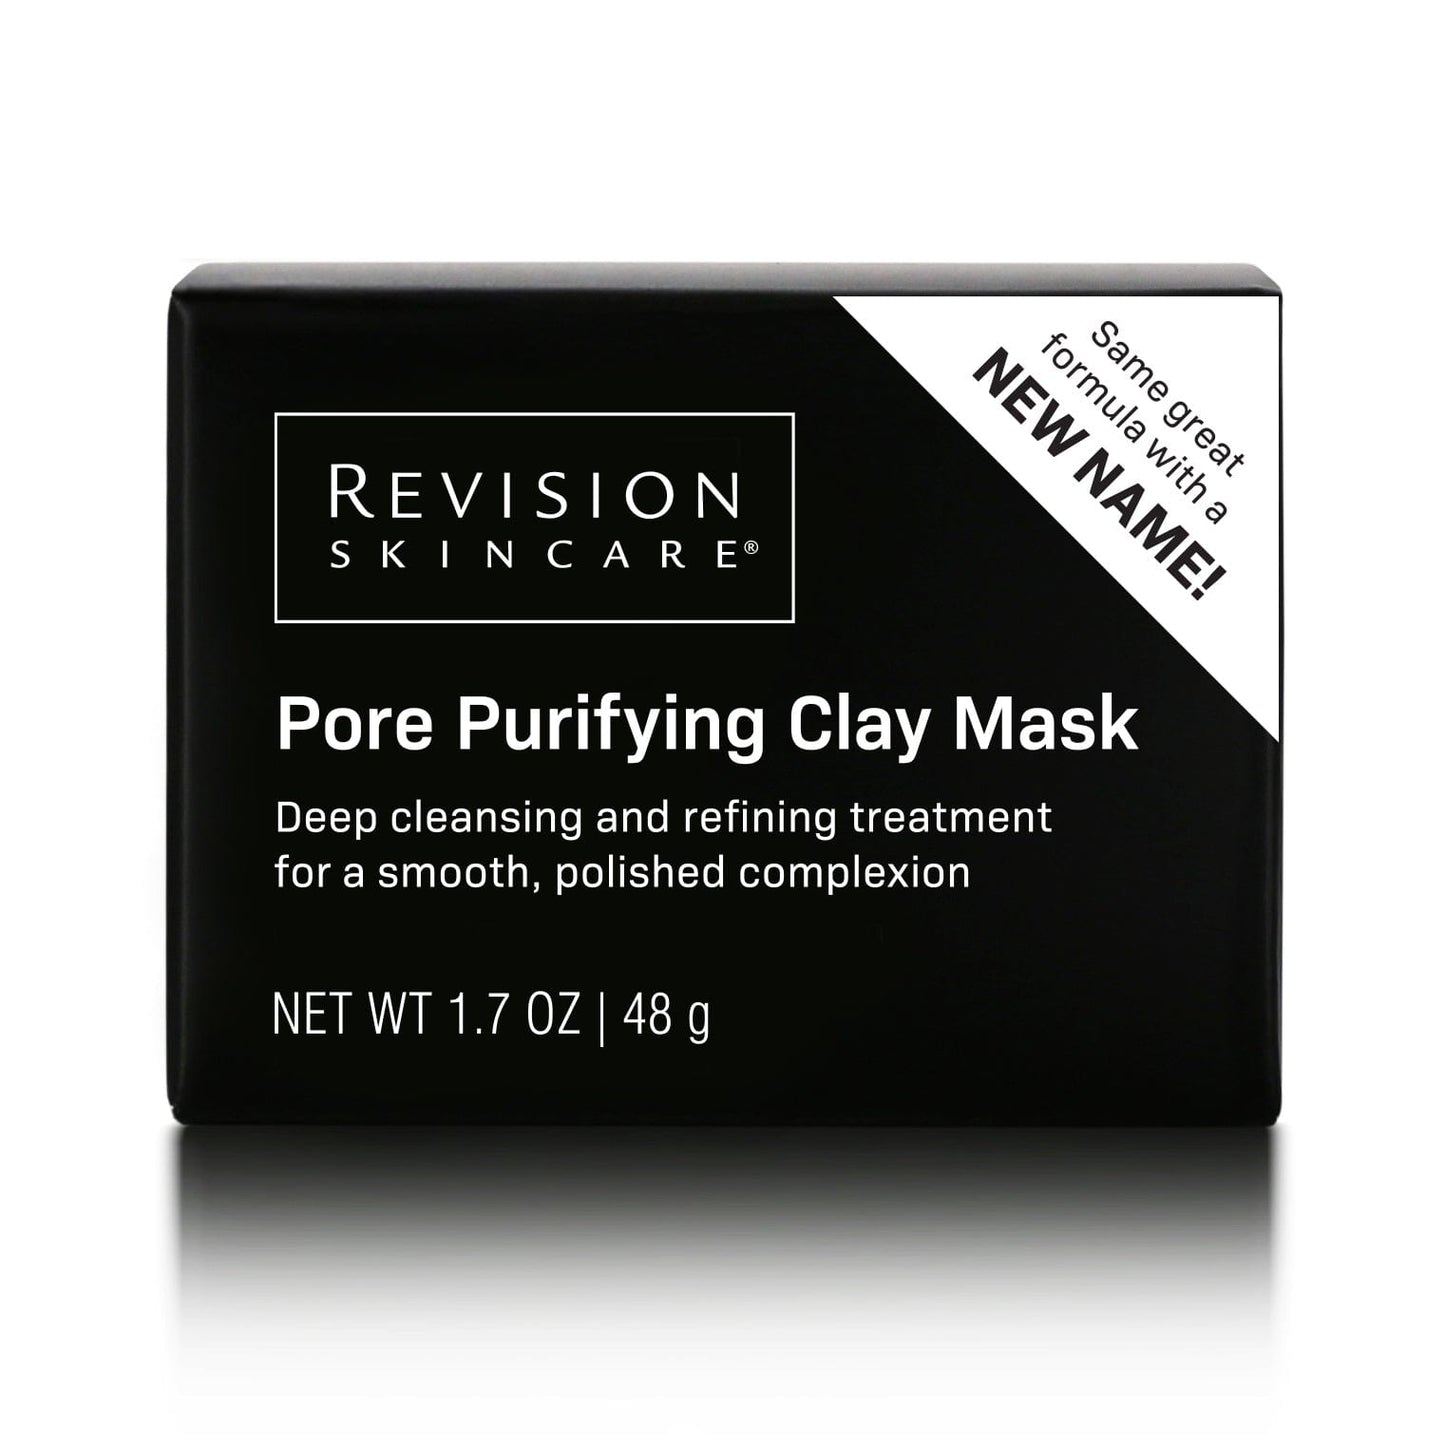 Pore Purifying Clay Mask - facial mask